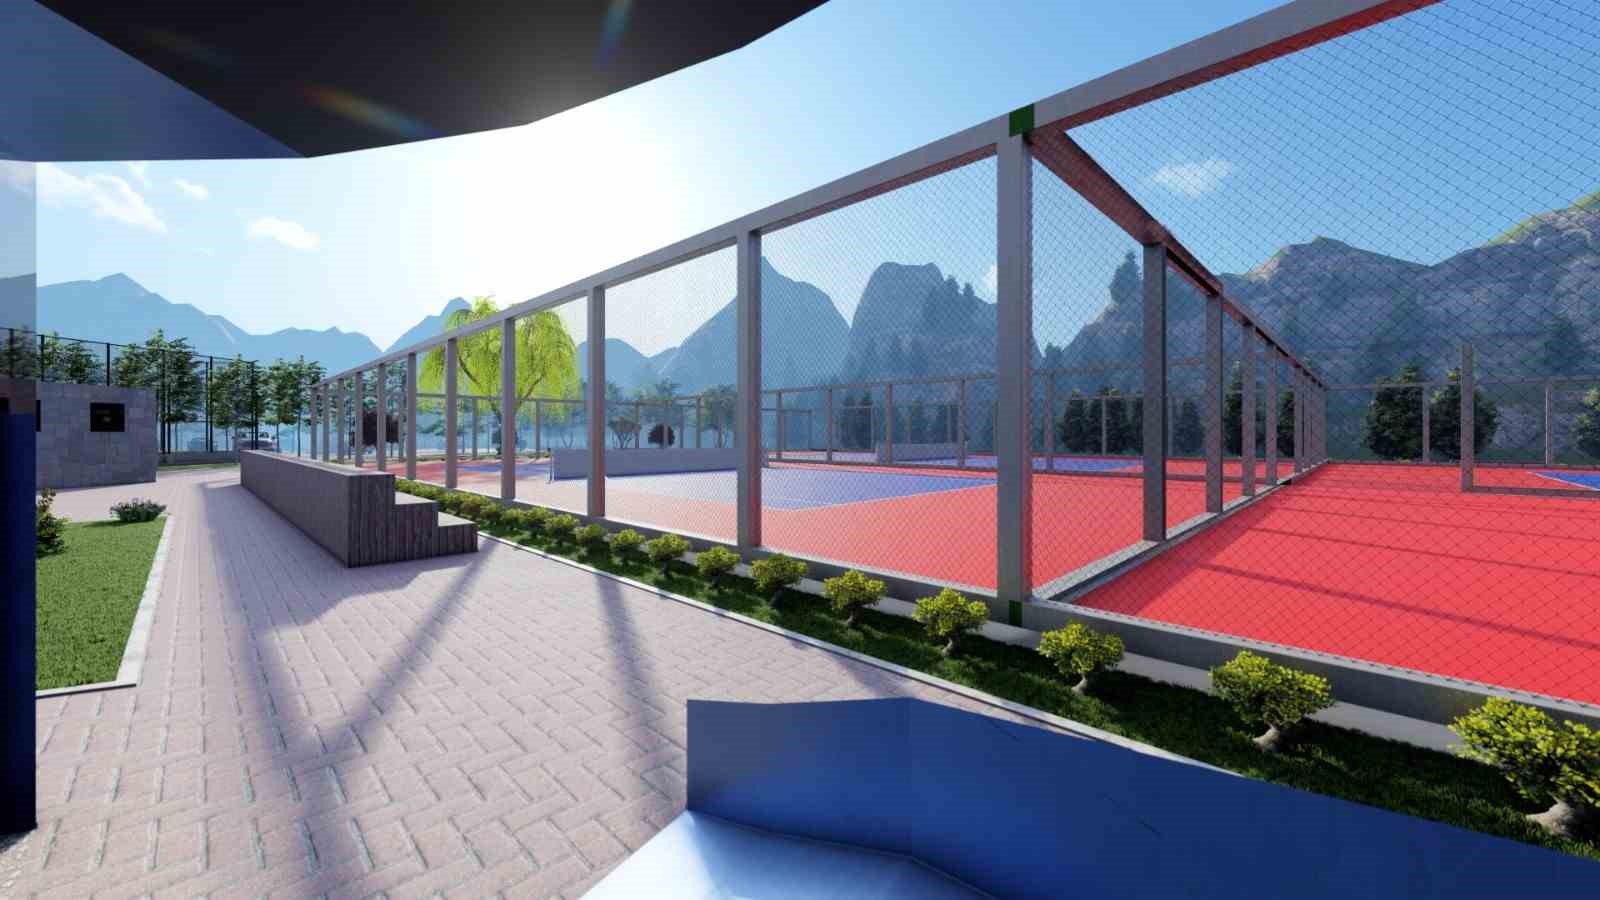 Kozan’a uluslararası standartta yeni tenis kort alanı kurulacak